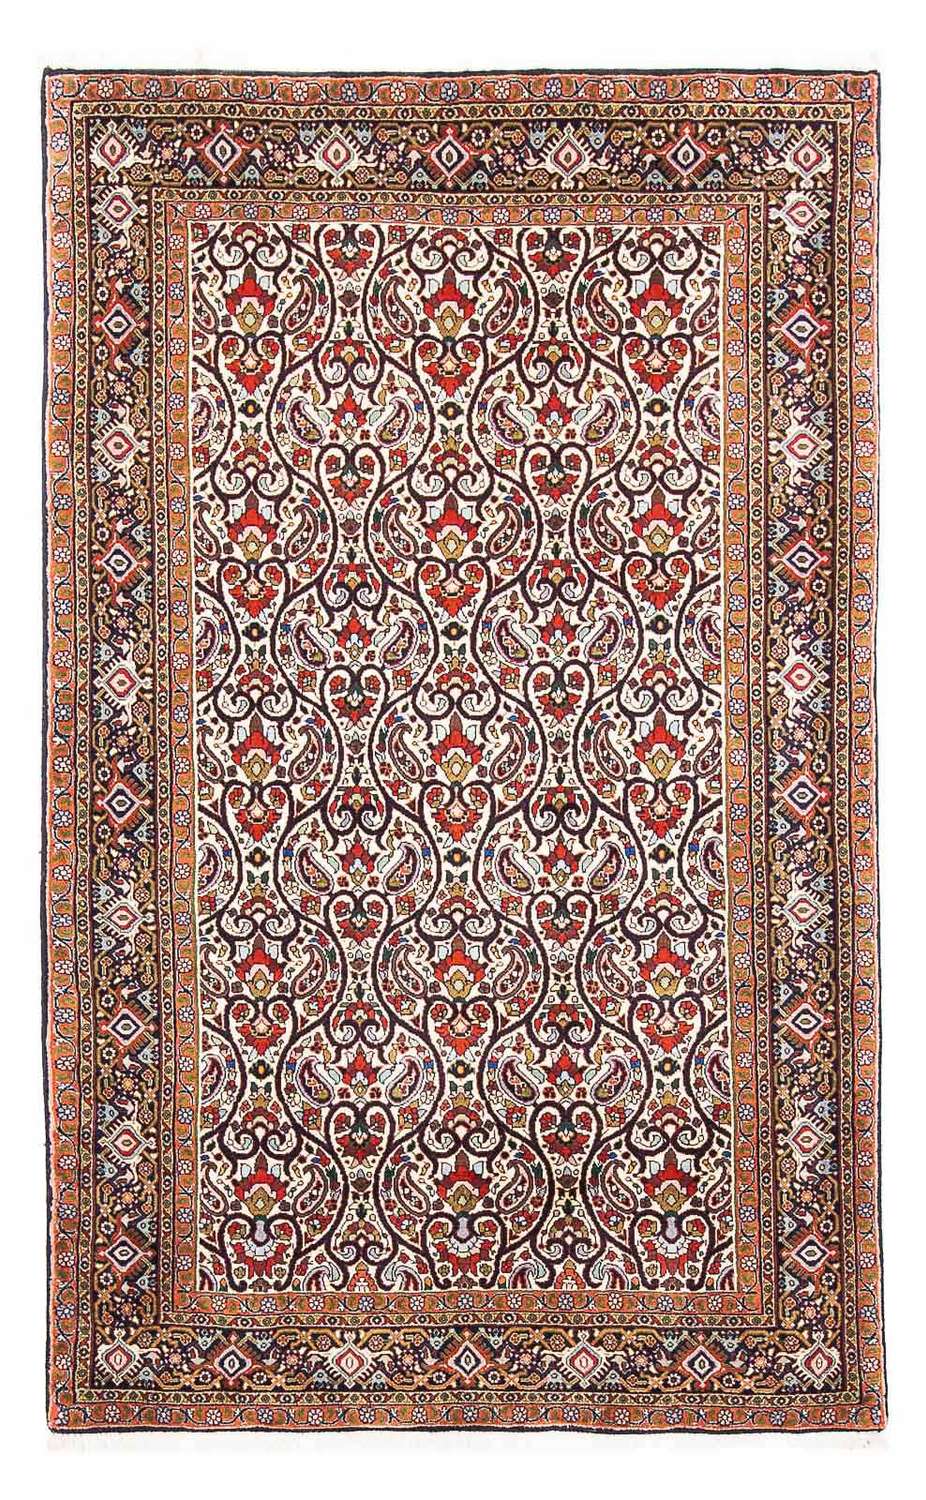 Tapis persan - Bidjar - 175 x 108 cm - beige